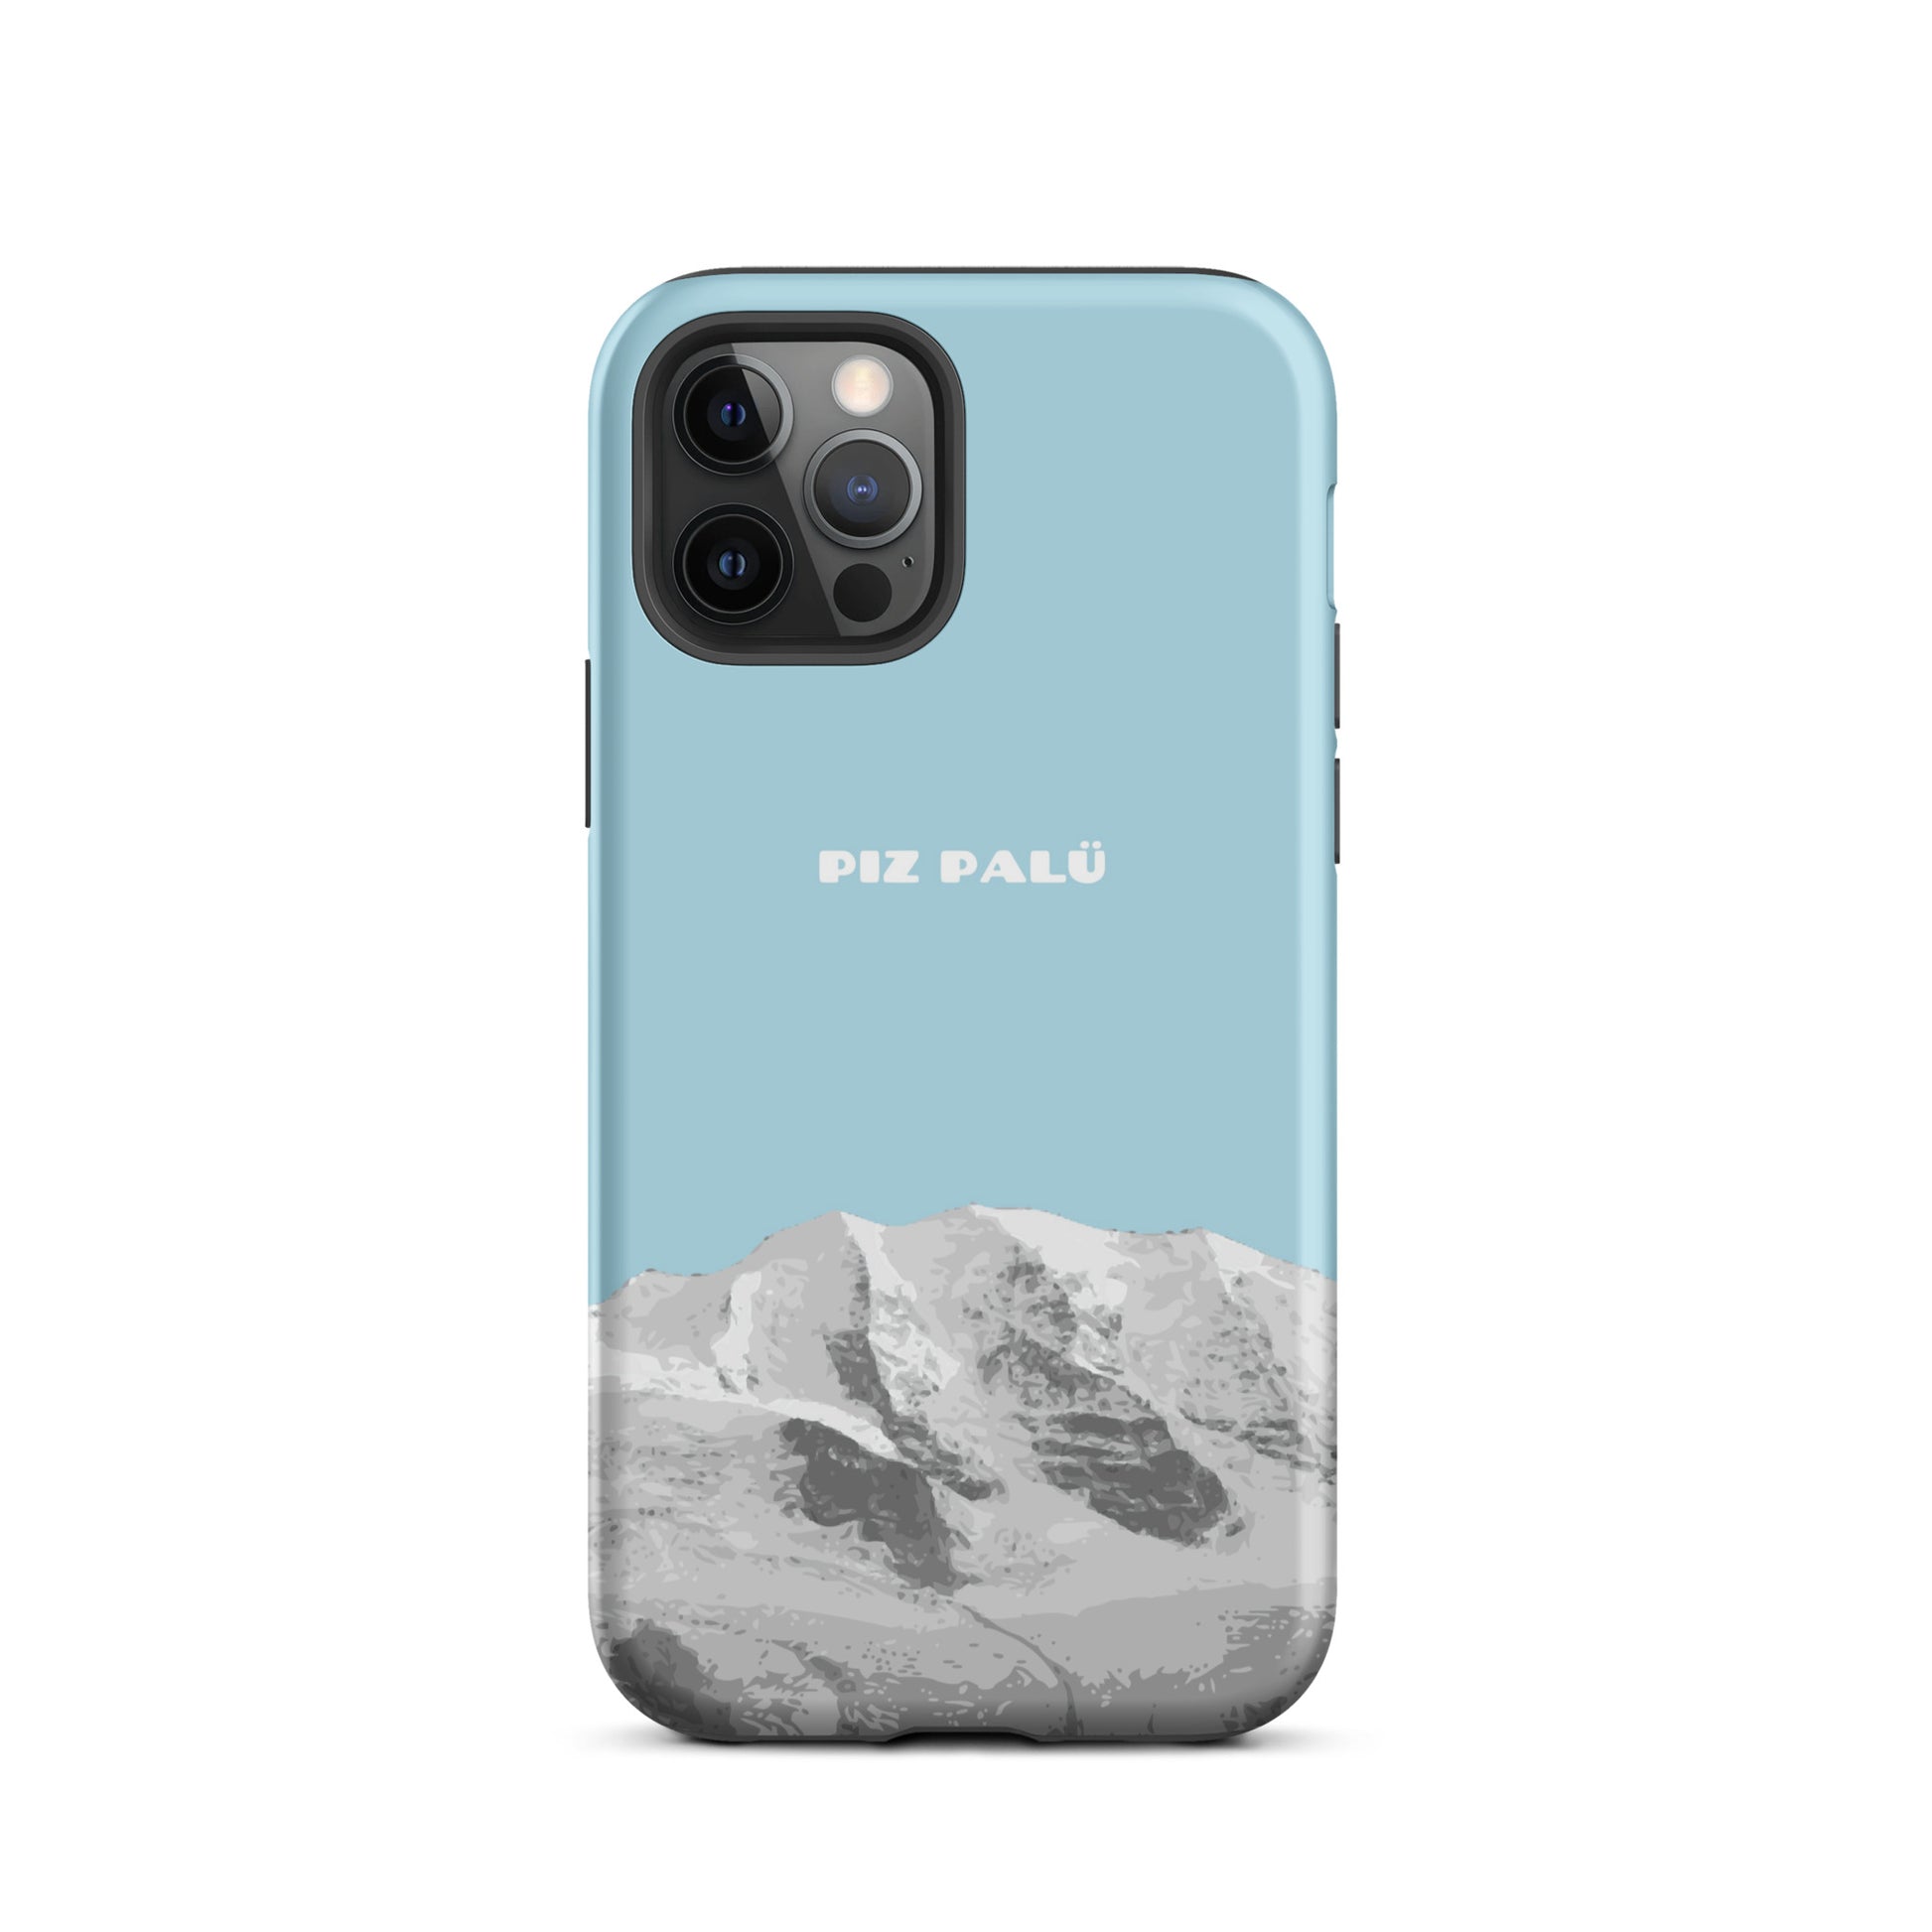 Hülle für das iPhone 12 Pro von Apple in der Farbe Hellblau, dass den Piz Palü in Graubünden zeigt.